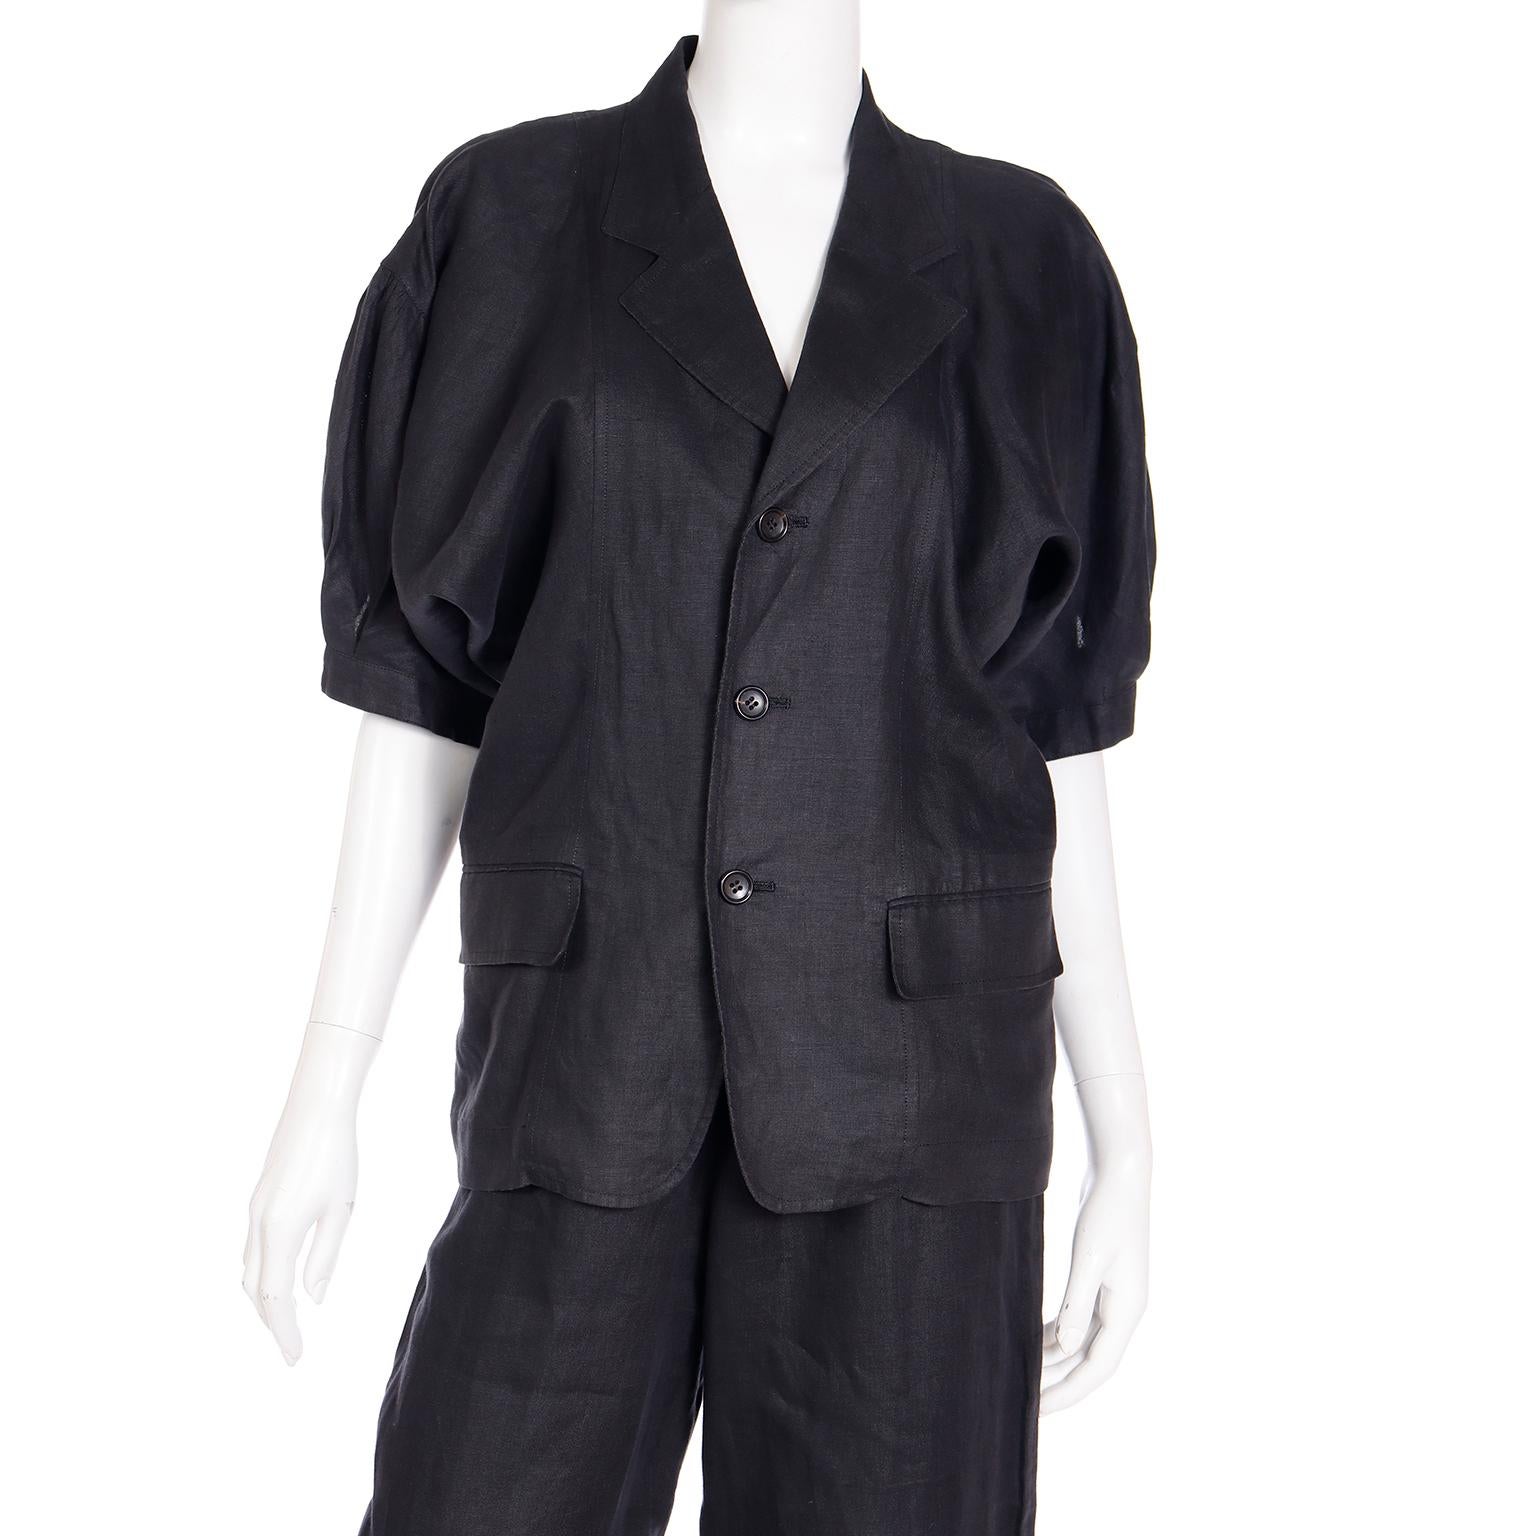 Comme des Garcons S/S 1989 Vintage Black Linen Jacket & Pants Outfit For Sale 9